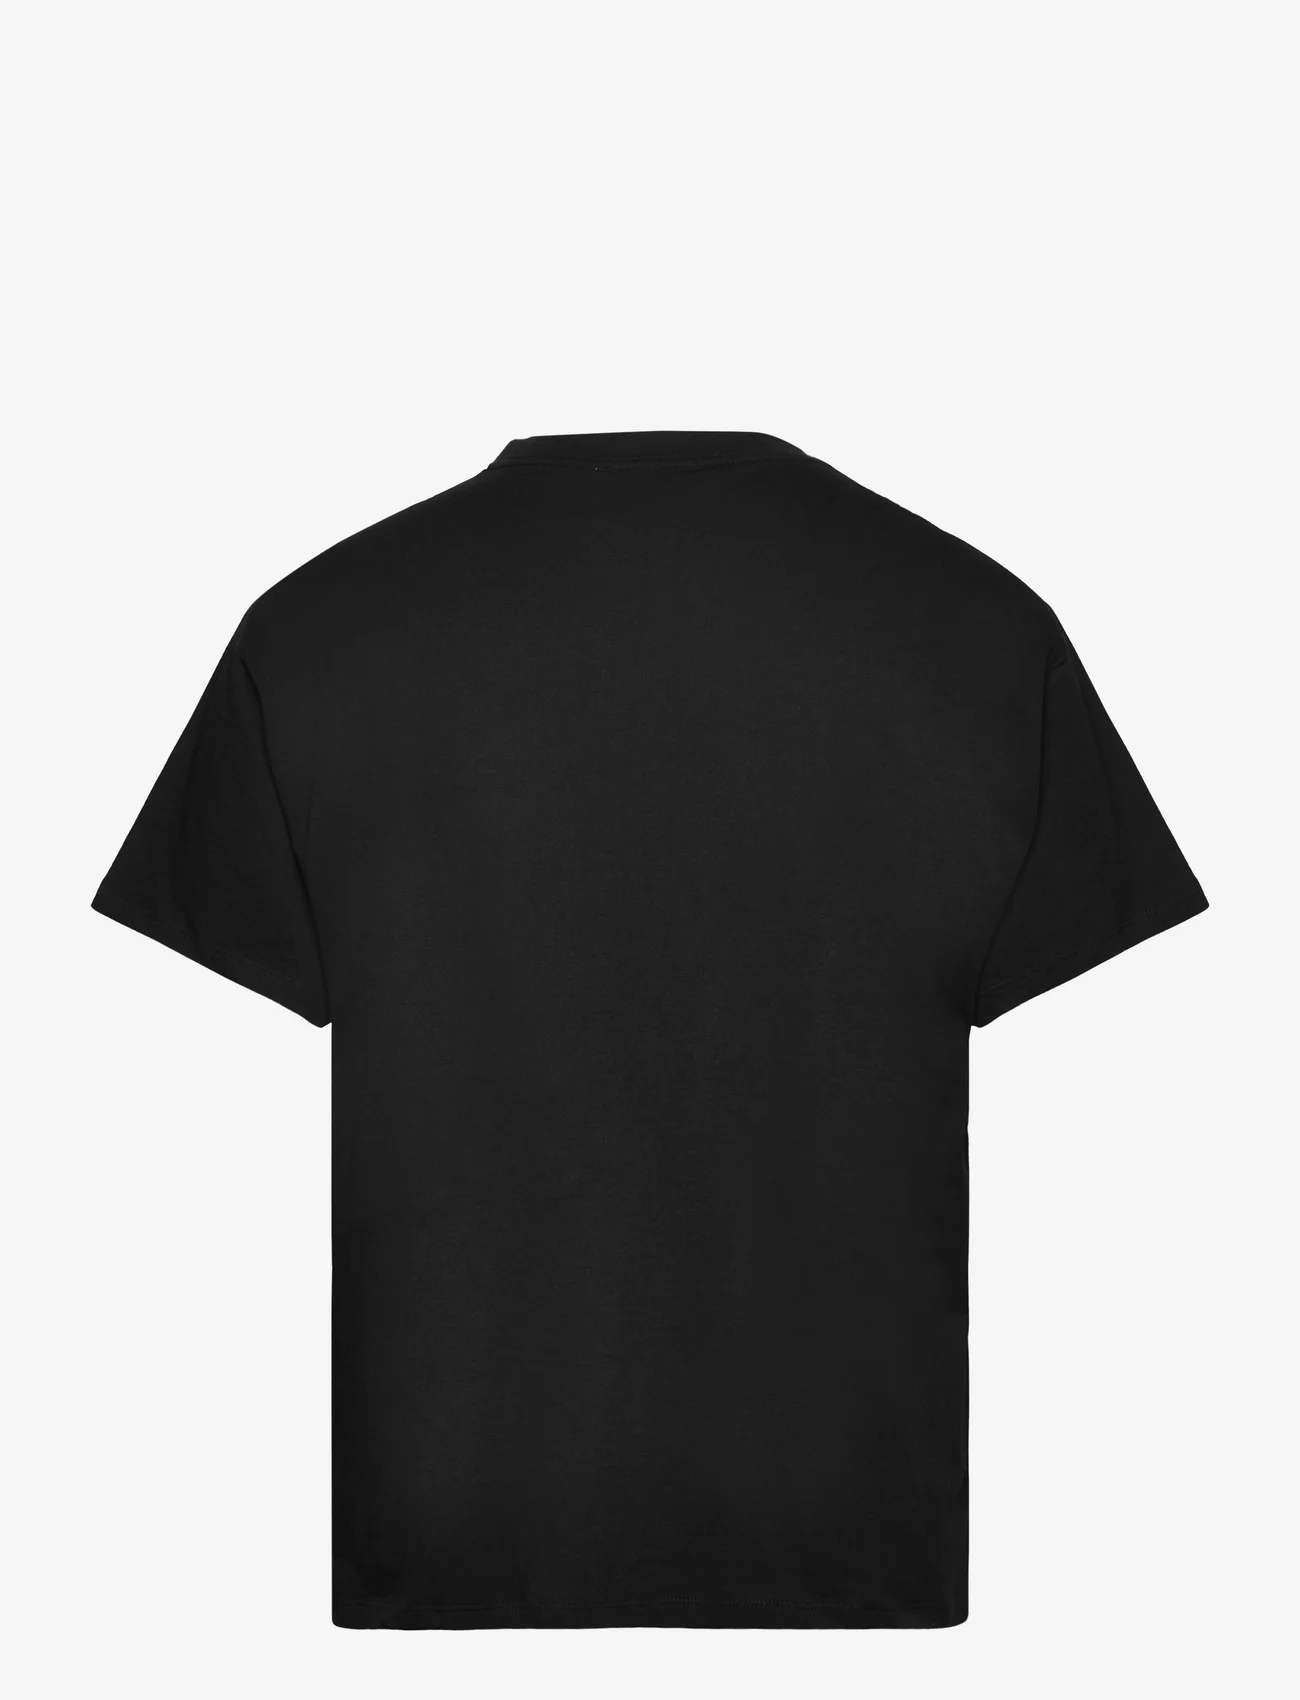 Soulland - ASH T-shirt - lühikeste varrukatega t-särgid - black - 1